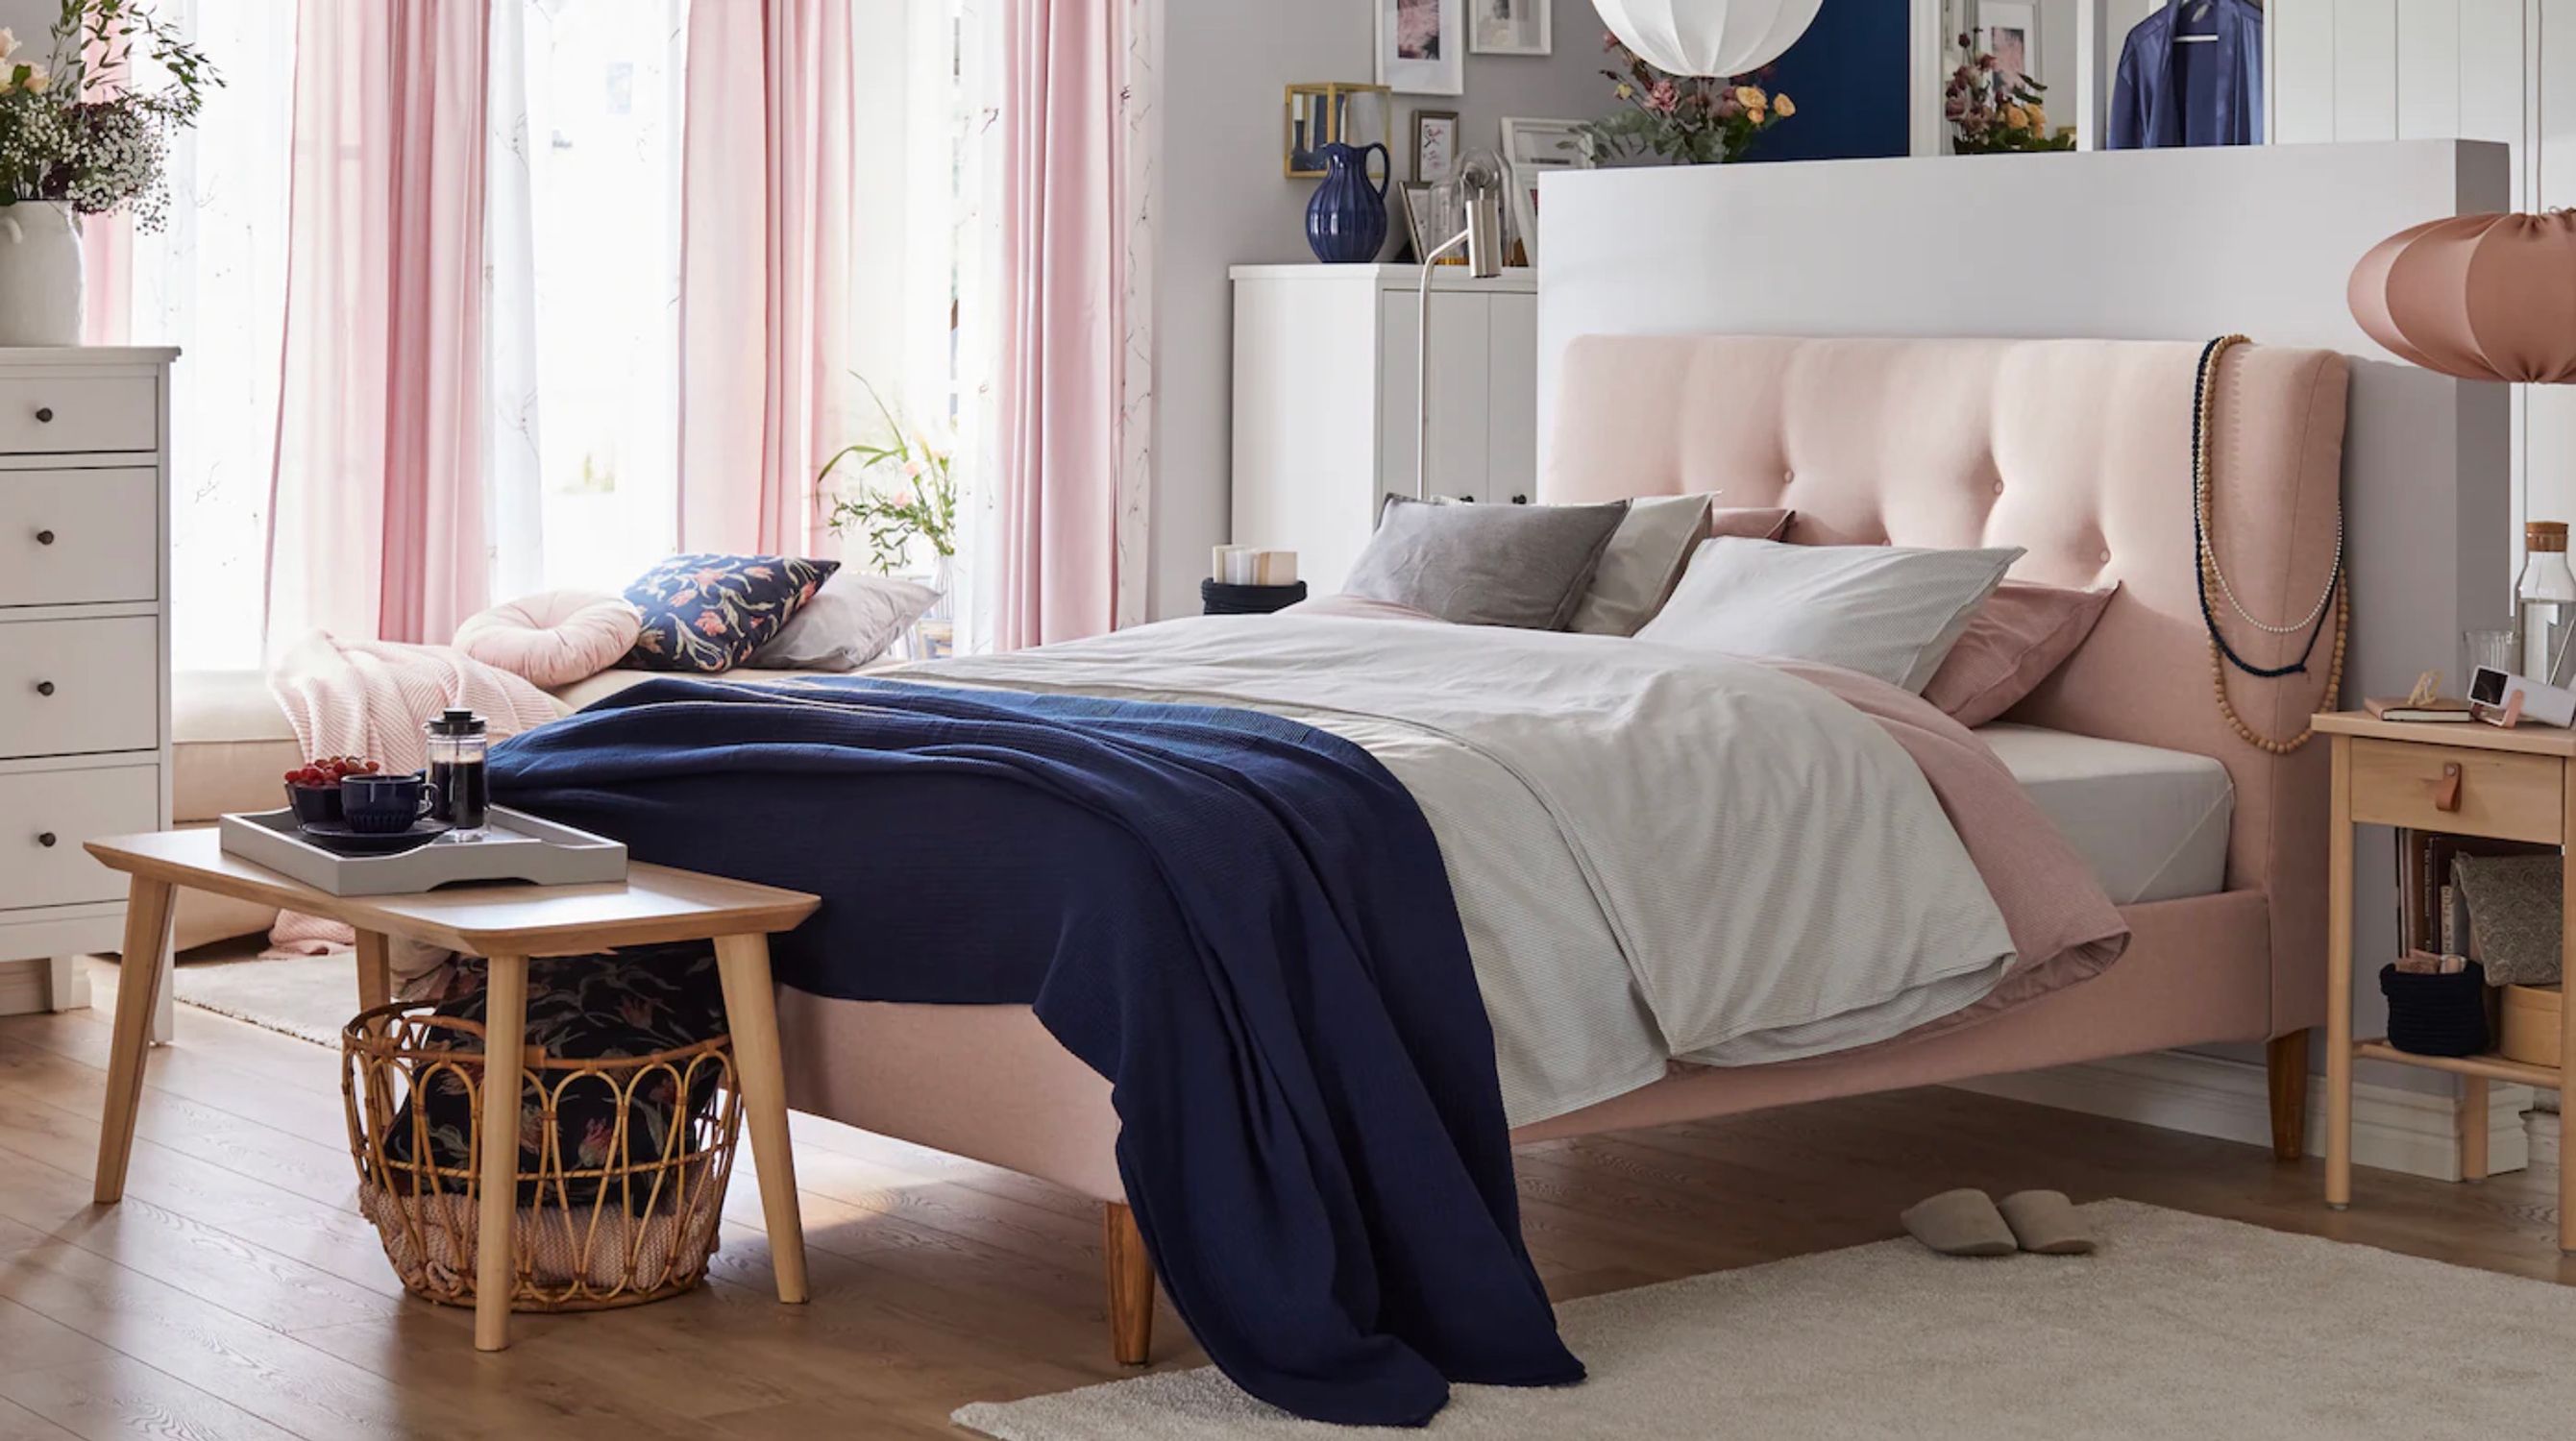 Publicación Destino Agencia de viajes Camas, cabeceros e ideas de Ikea para organizar el dormitorio